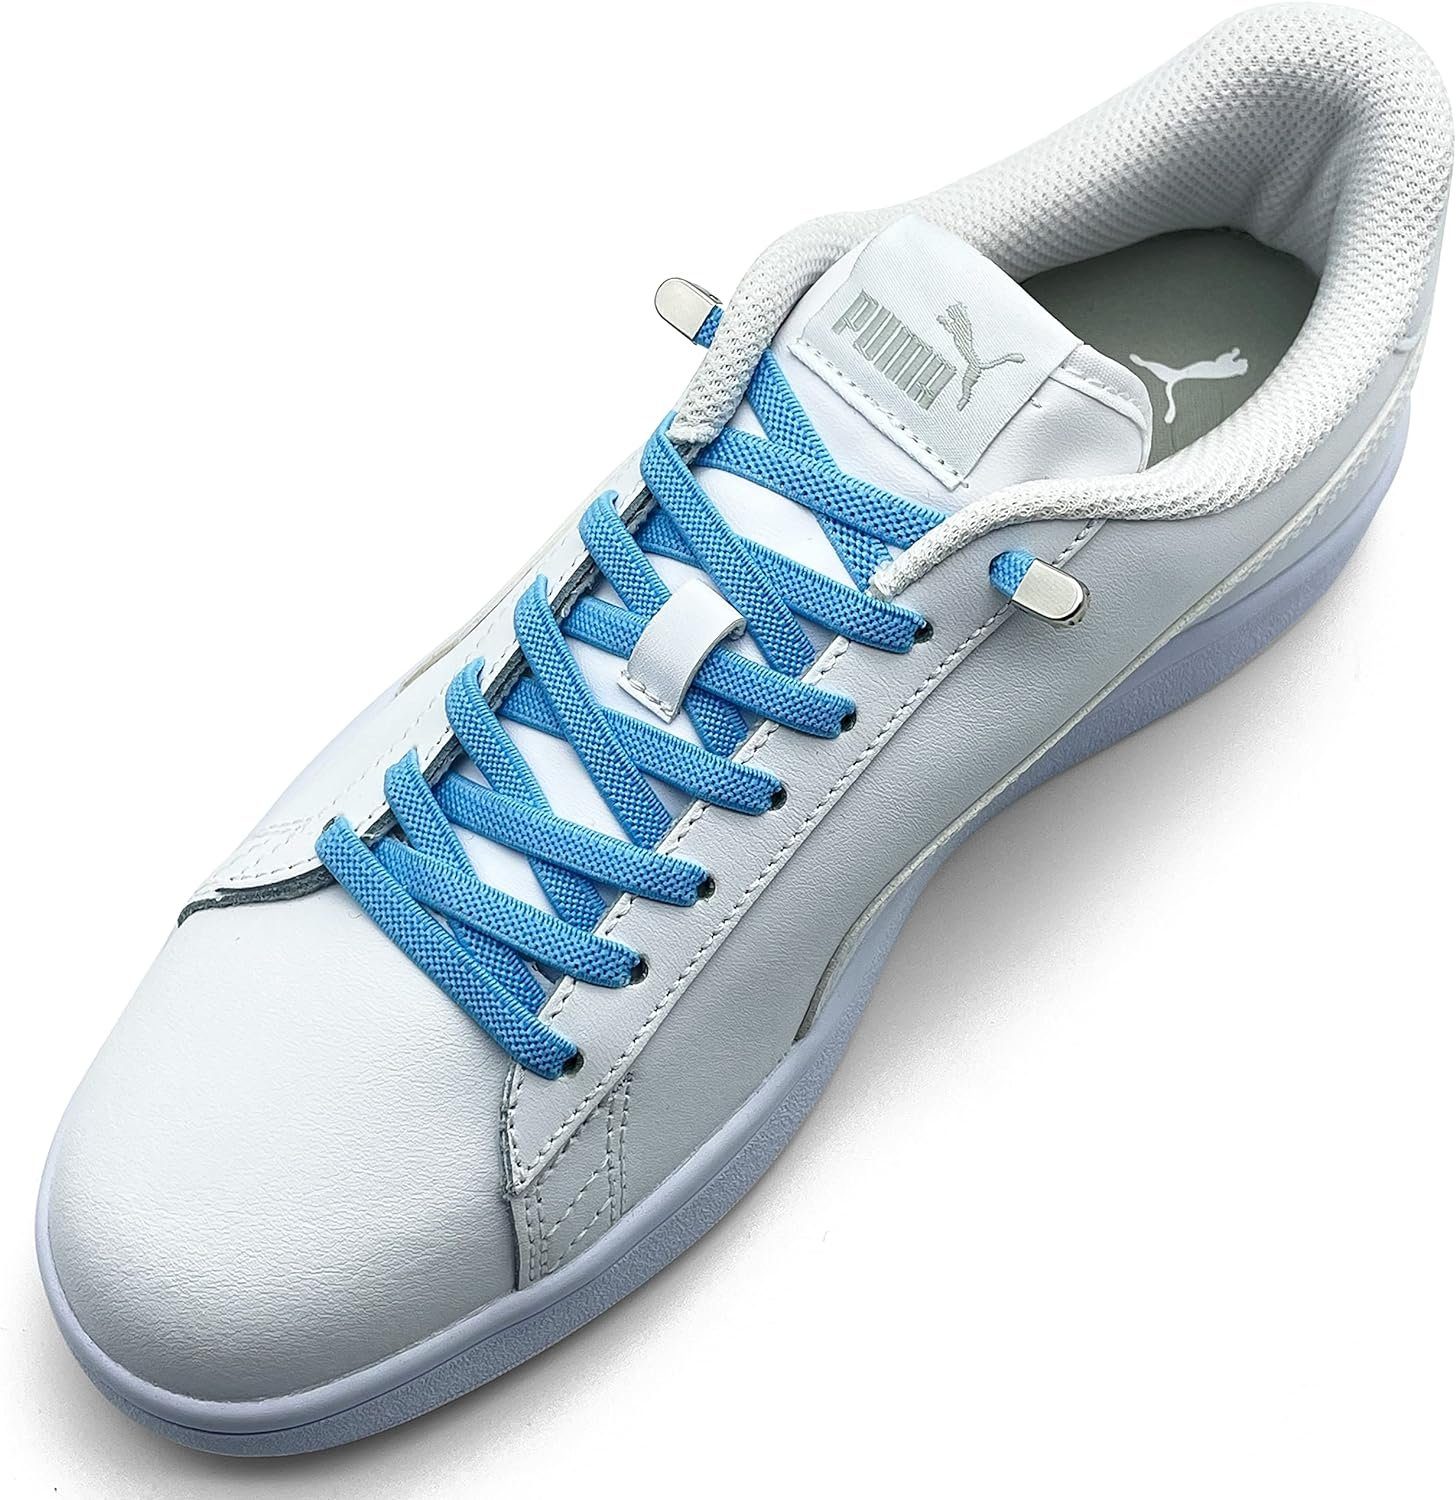 ELANOX Schnürsenkel 4 Stück für 2 Paar Schuhe elastische Schnürsenkel mit Clips, inkl. Enden (Clips) - 8 St. in silber sky blue